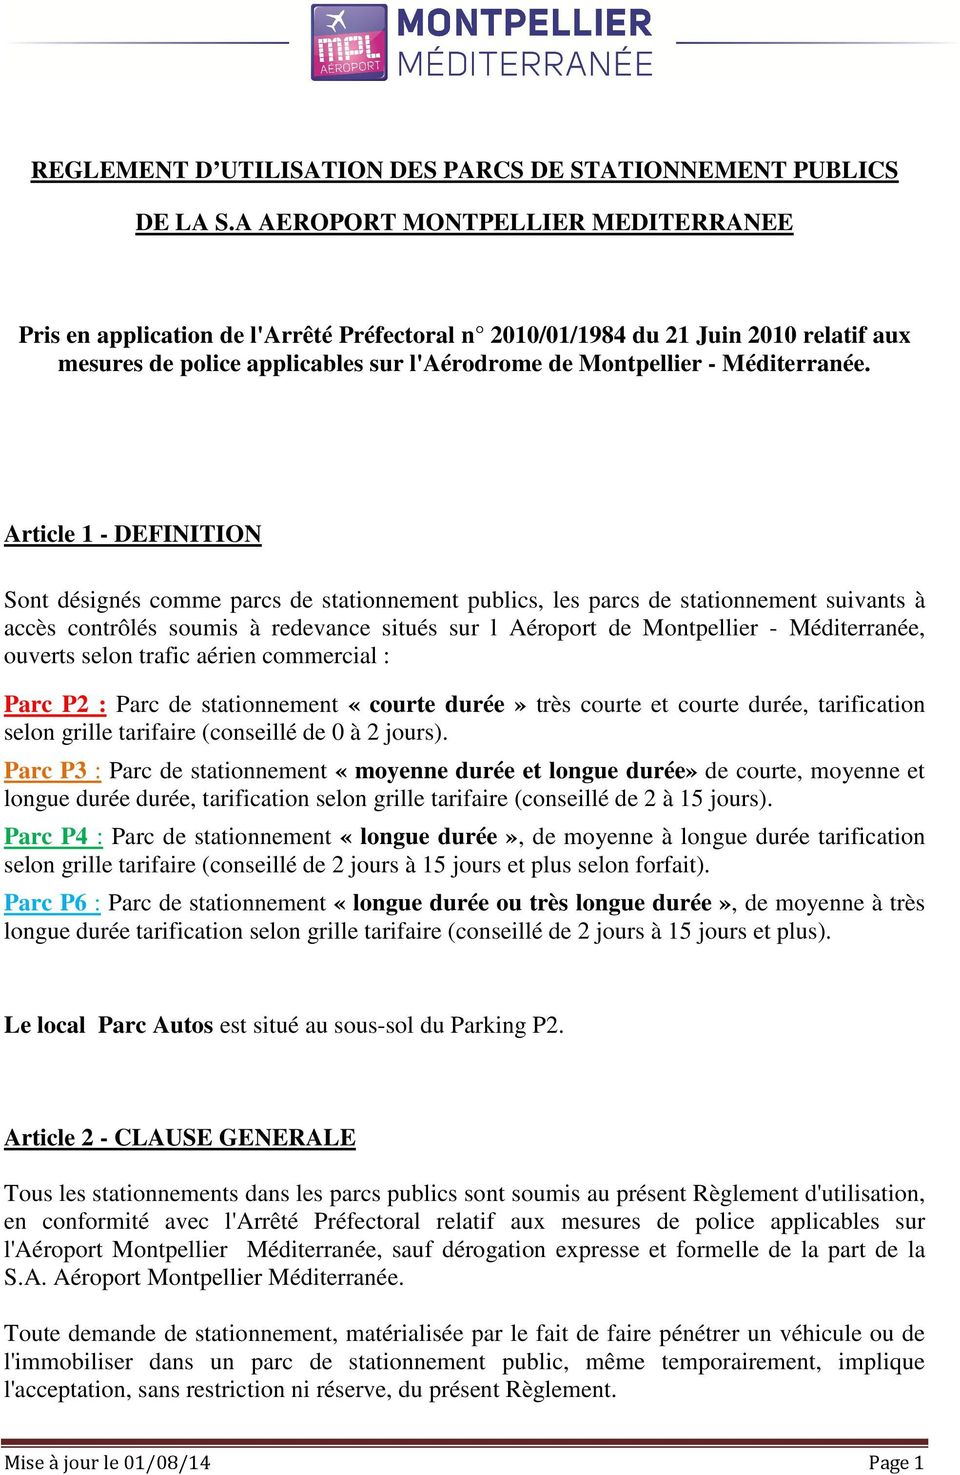 Article 1 - DEFINITION Sont désignés comme parcs de stationnement publics, les parcs de stationnement suivants à accès contrôlés soumis à redevance situés sur l Aéroport de Montpellier -